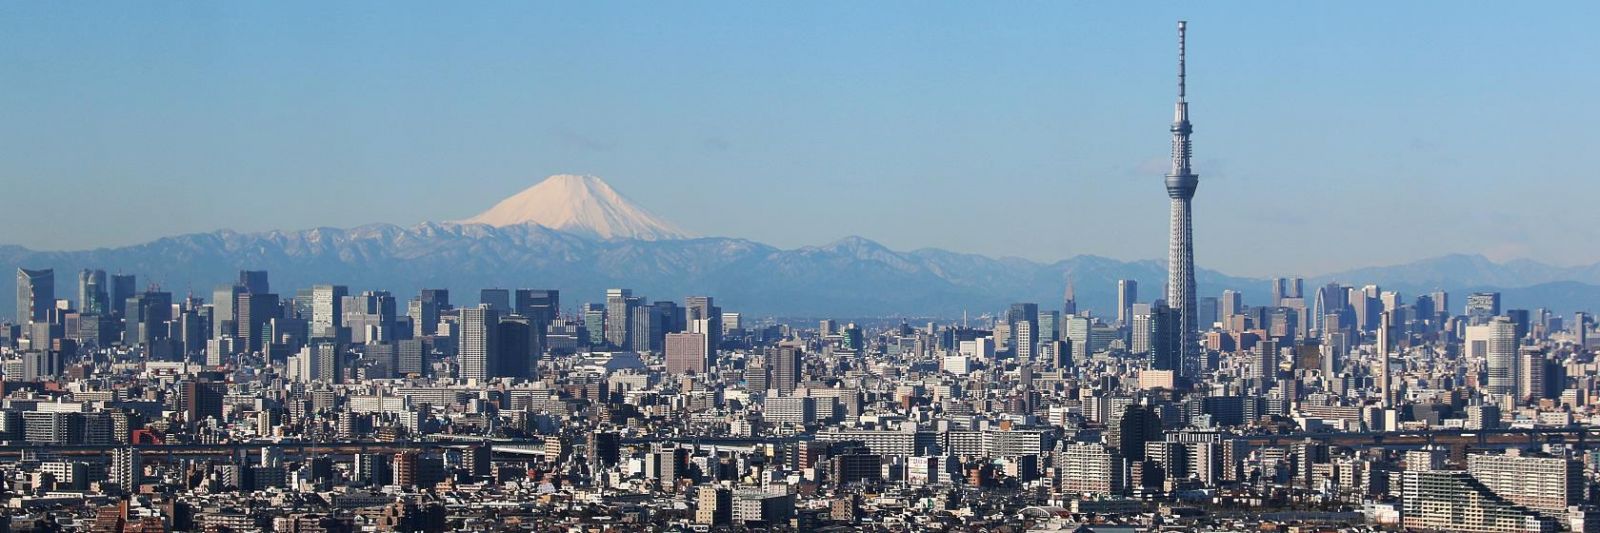 Tokyo, thủ đô của Nhật Bản, là một siêu đô thị hàng đầu thế giới với dân số 39 triệu người, hơn cả dân số của Canada, GPD bình quân đầu người đạt trên 64.000 USD.